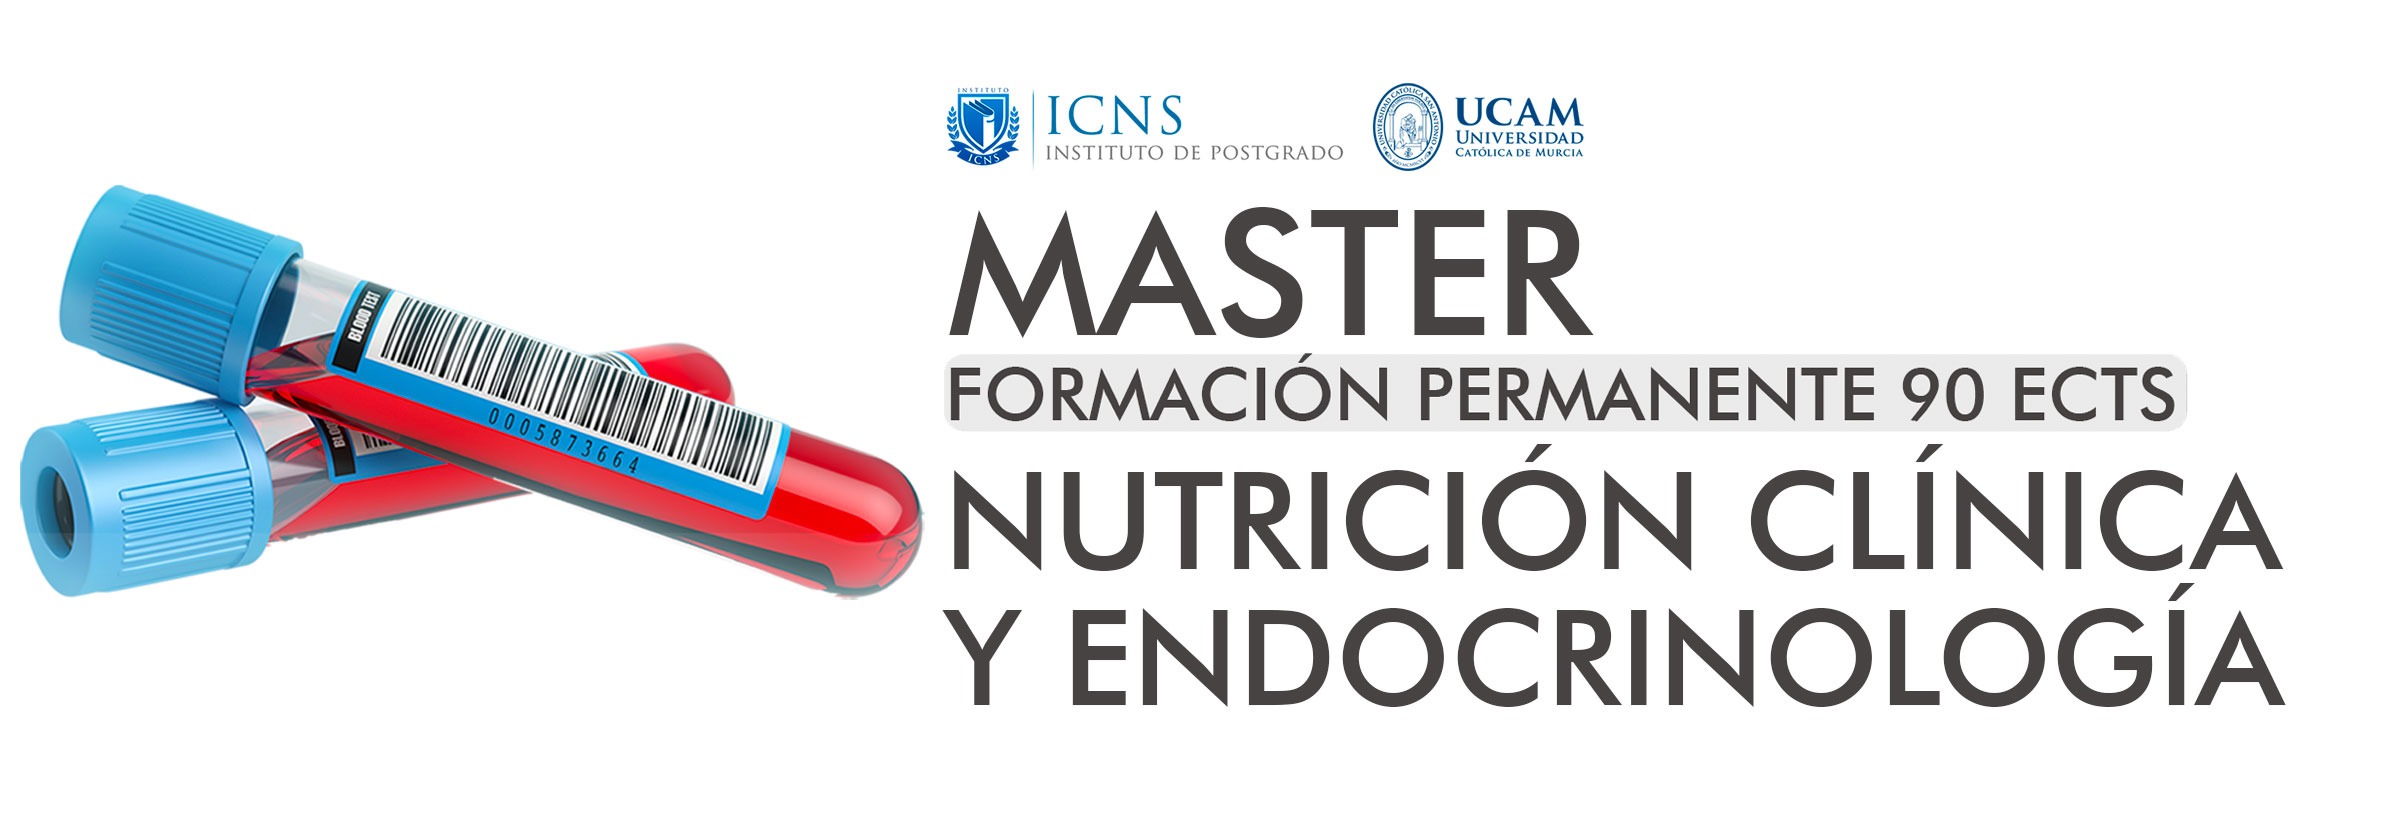 Máster en Nutrición Clínica y Endocrinología (CLMASTERENDO7)